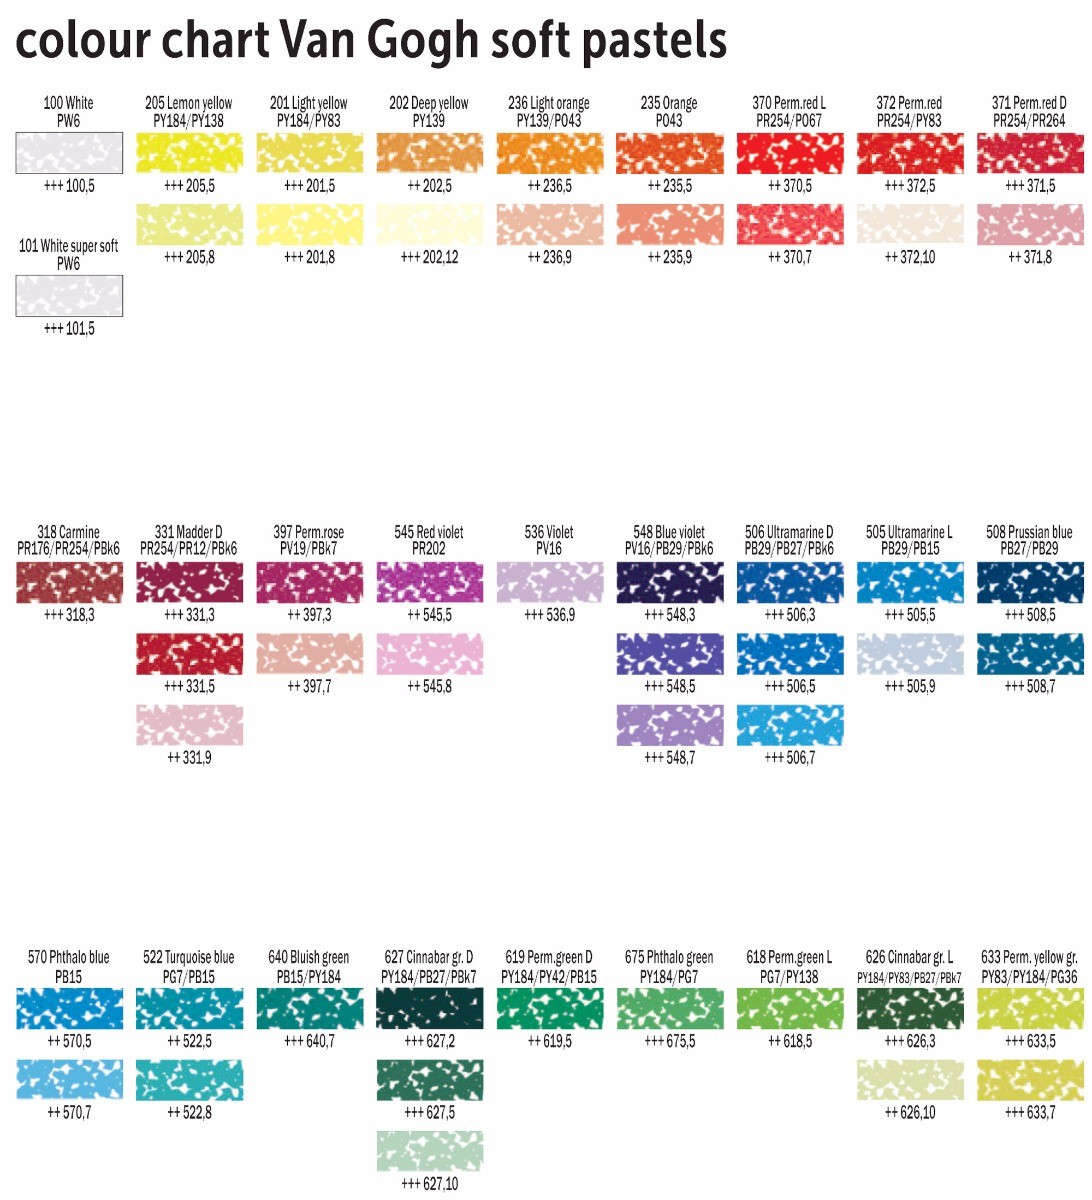 Van Gogh Soft Pastels Colour Chart